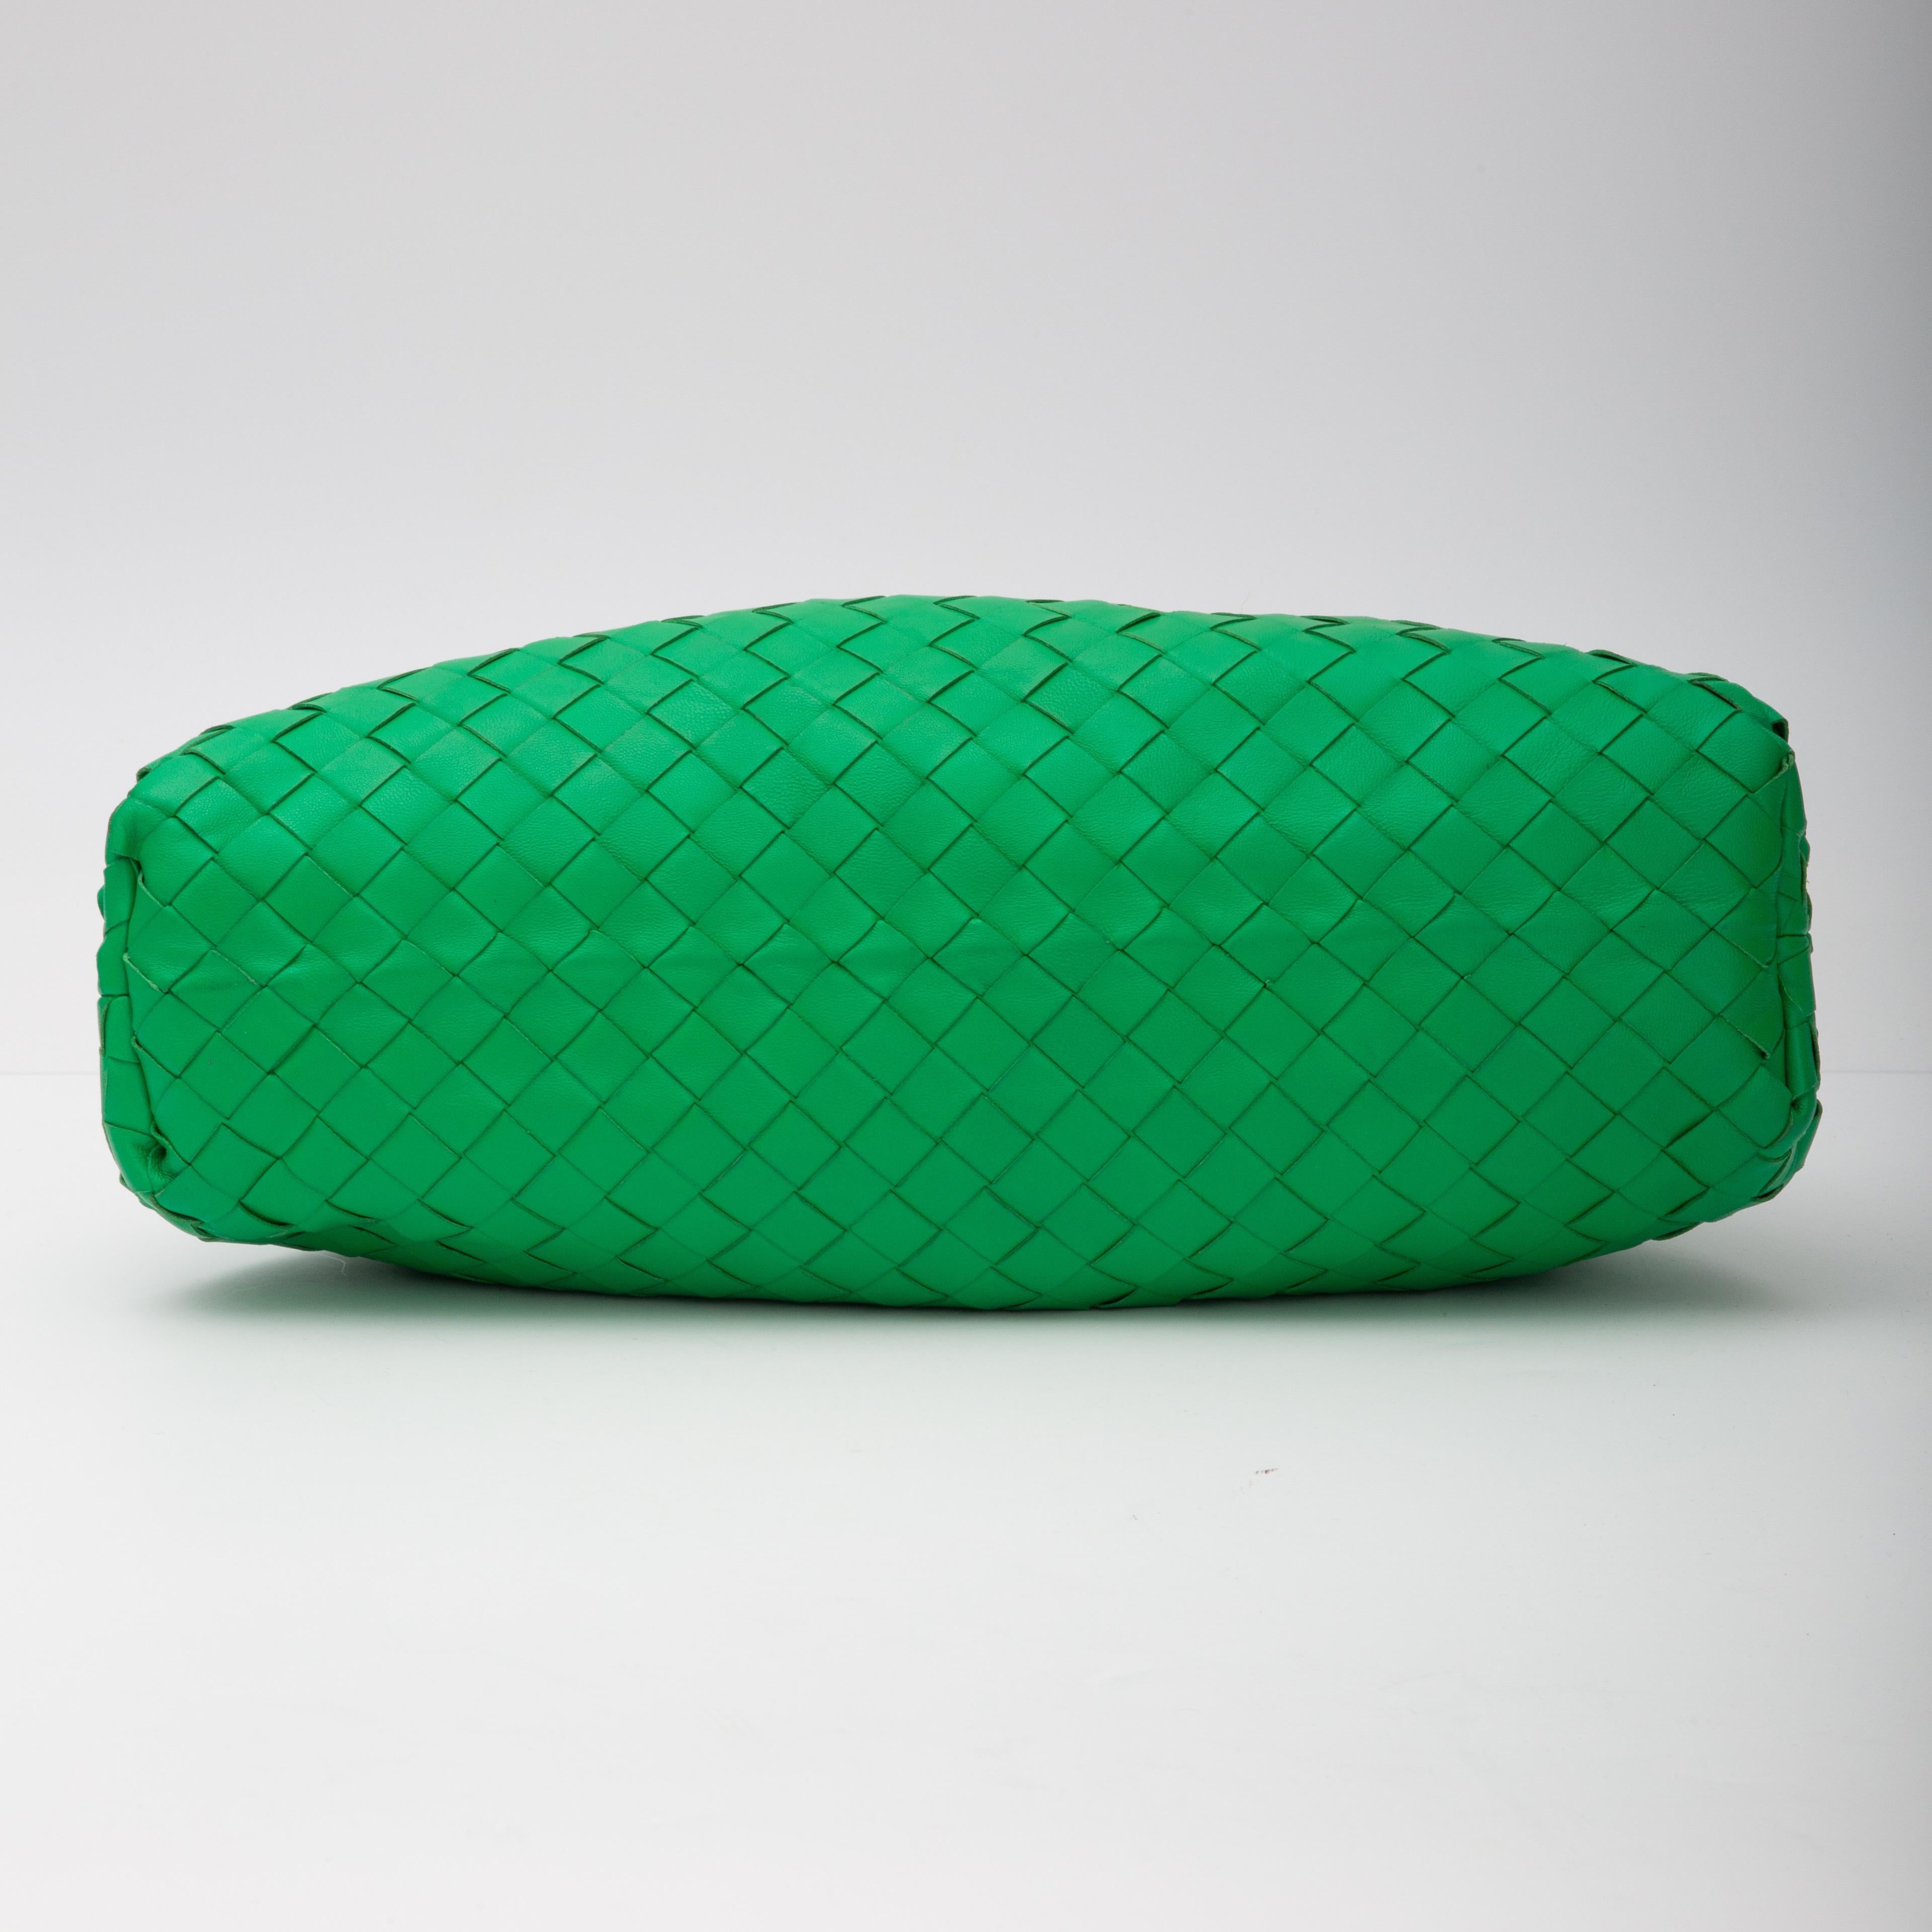 Bottega Veneta Green Intrecciato Leather The Pouch Clutch Bag 1